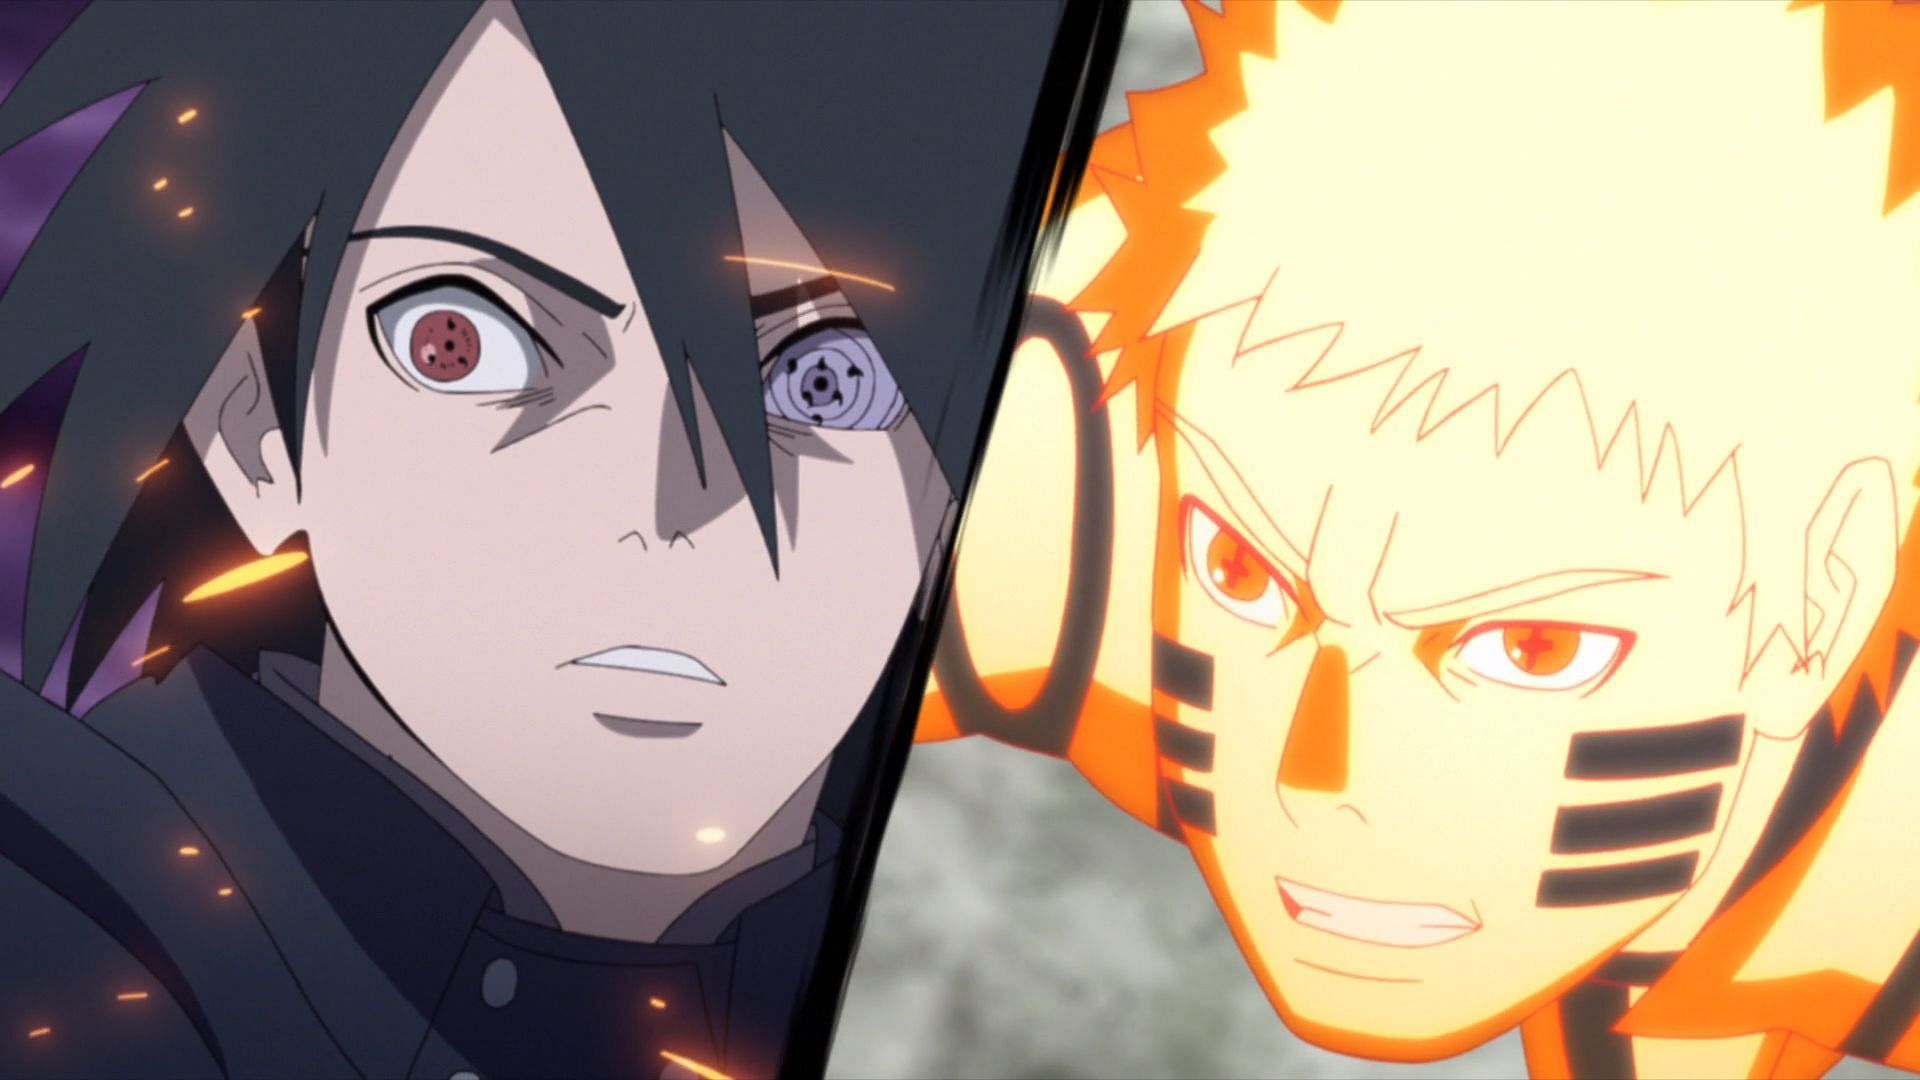 Naruto and Sasuke, circa Boruto (Image via Studio Pierrot)